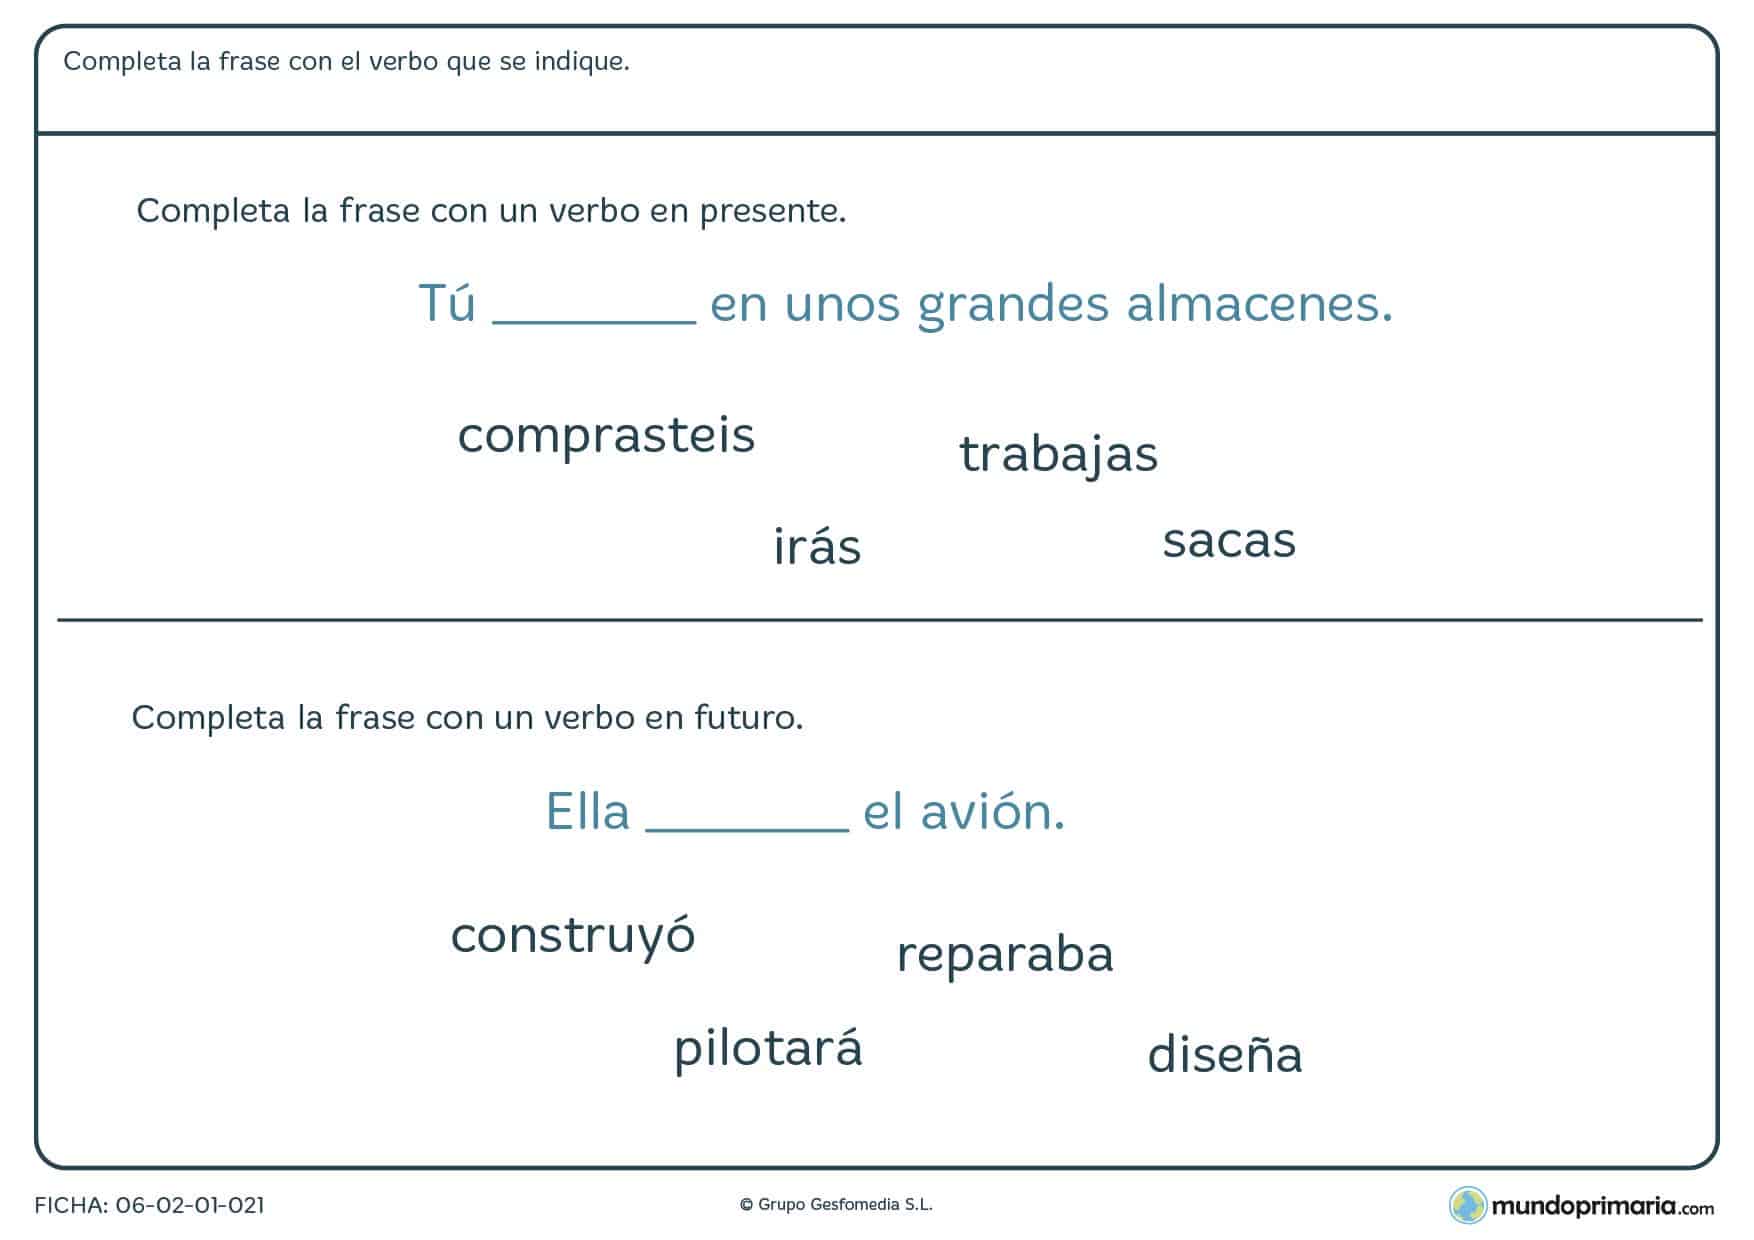 Ficha de completar la frase con verbos en distintas modalidades